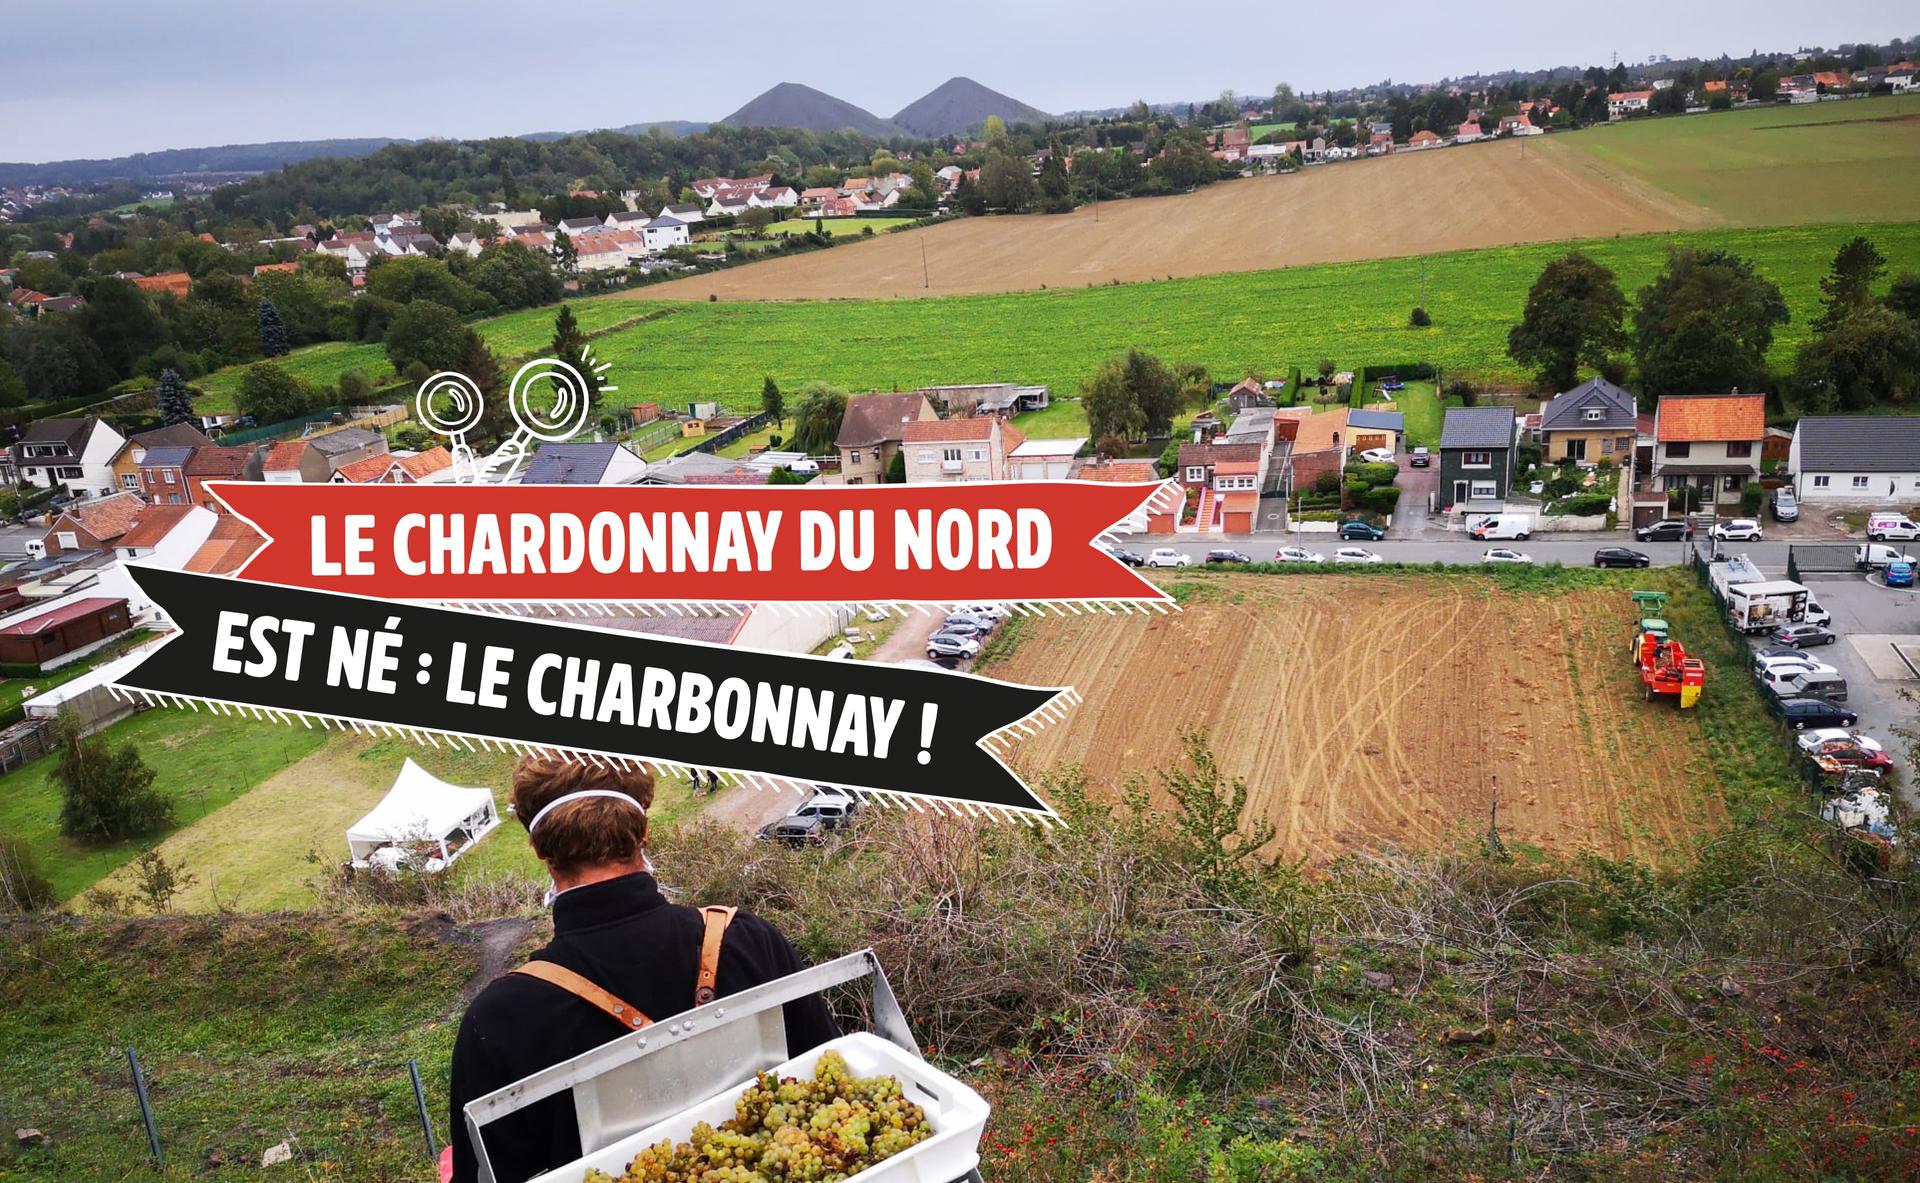 Le Chardonnay du nord est né : le Charbonnay !